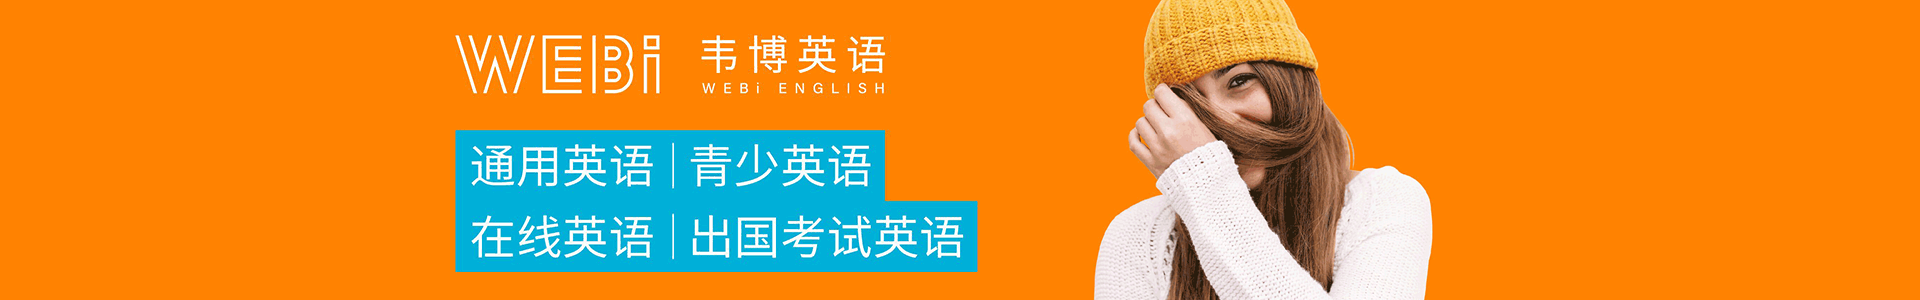 上海韦博国际英语